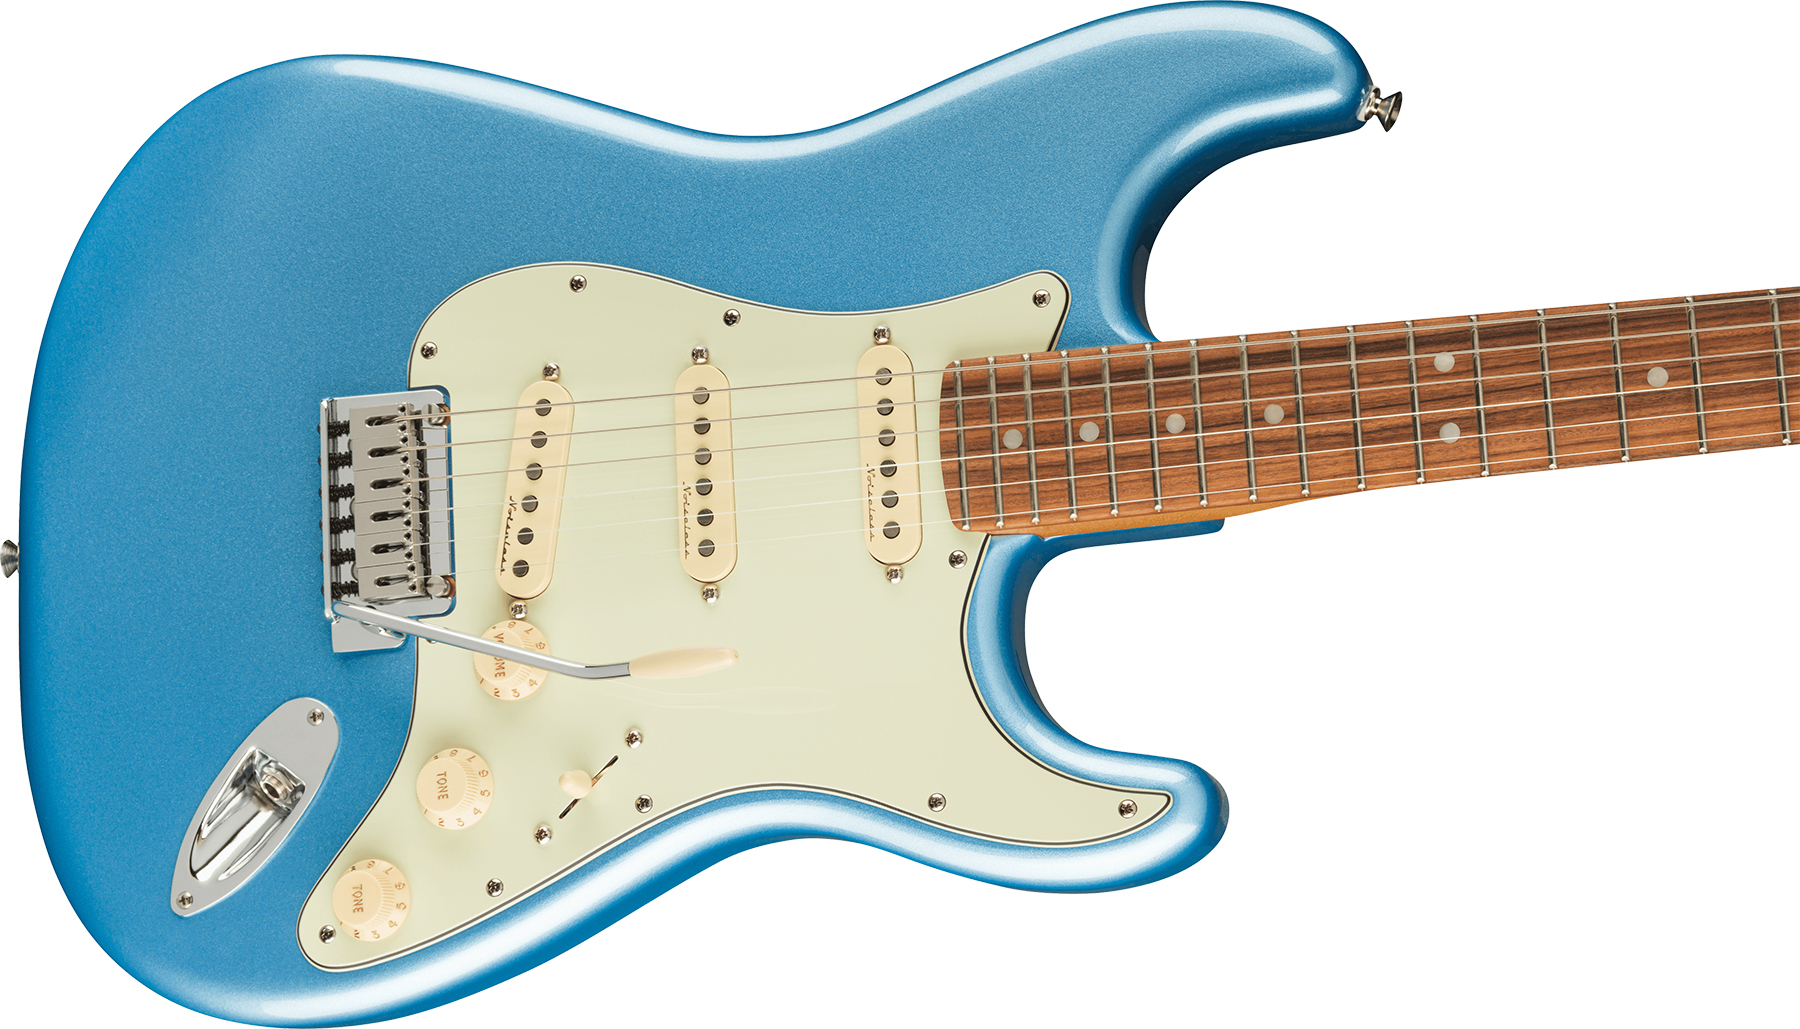 Fender Strat Player Plus Mex 3s Trem Pf - Opal Spark - E-Gitarre in Str-Form - Variation 2